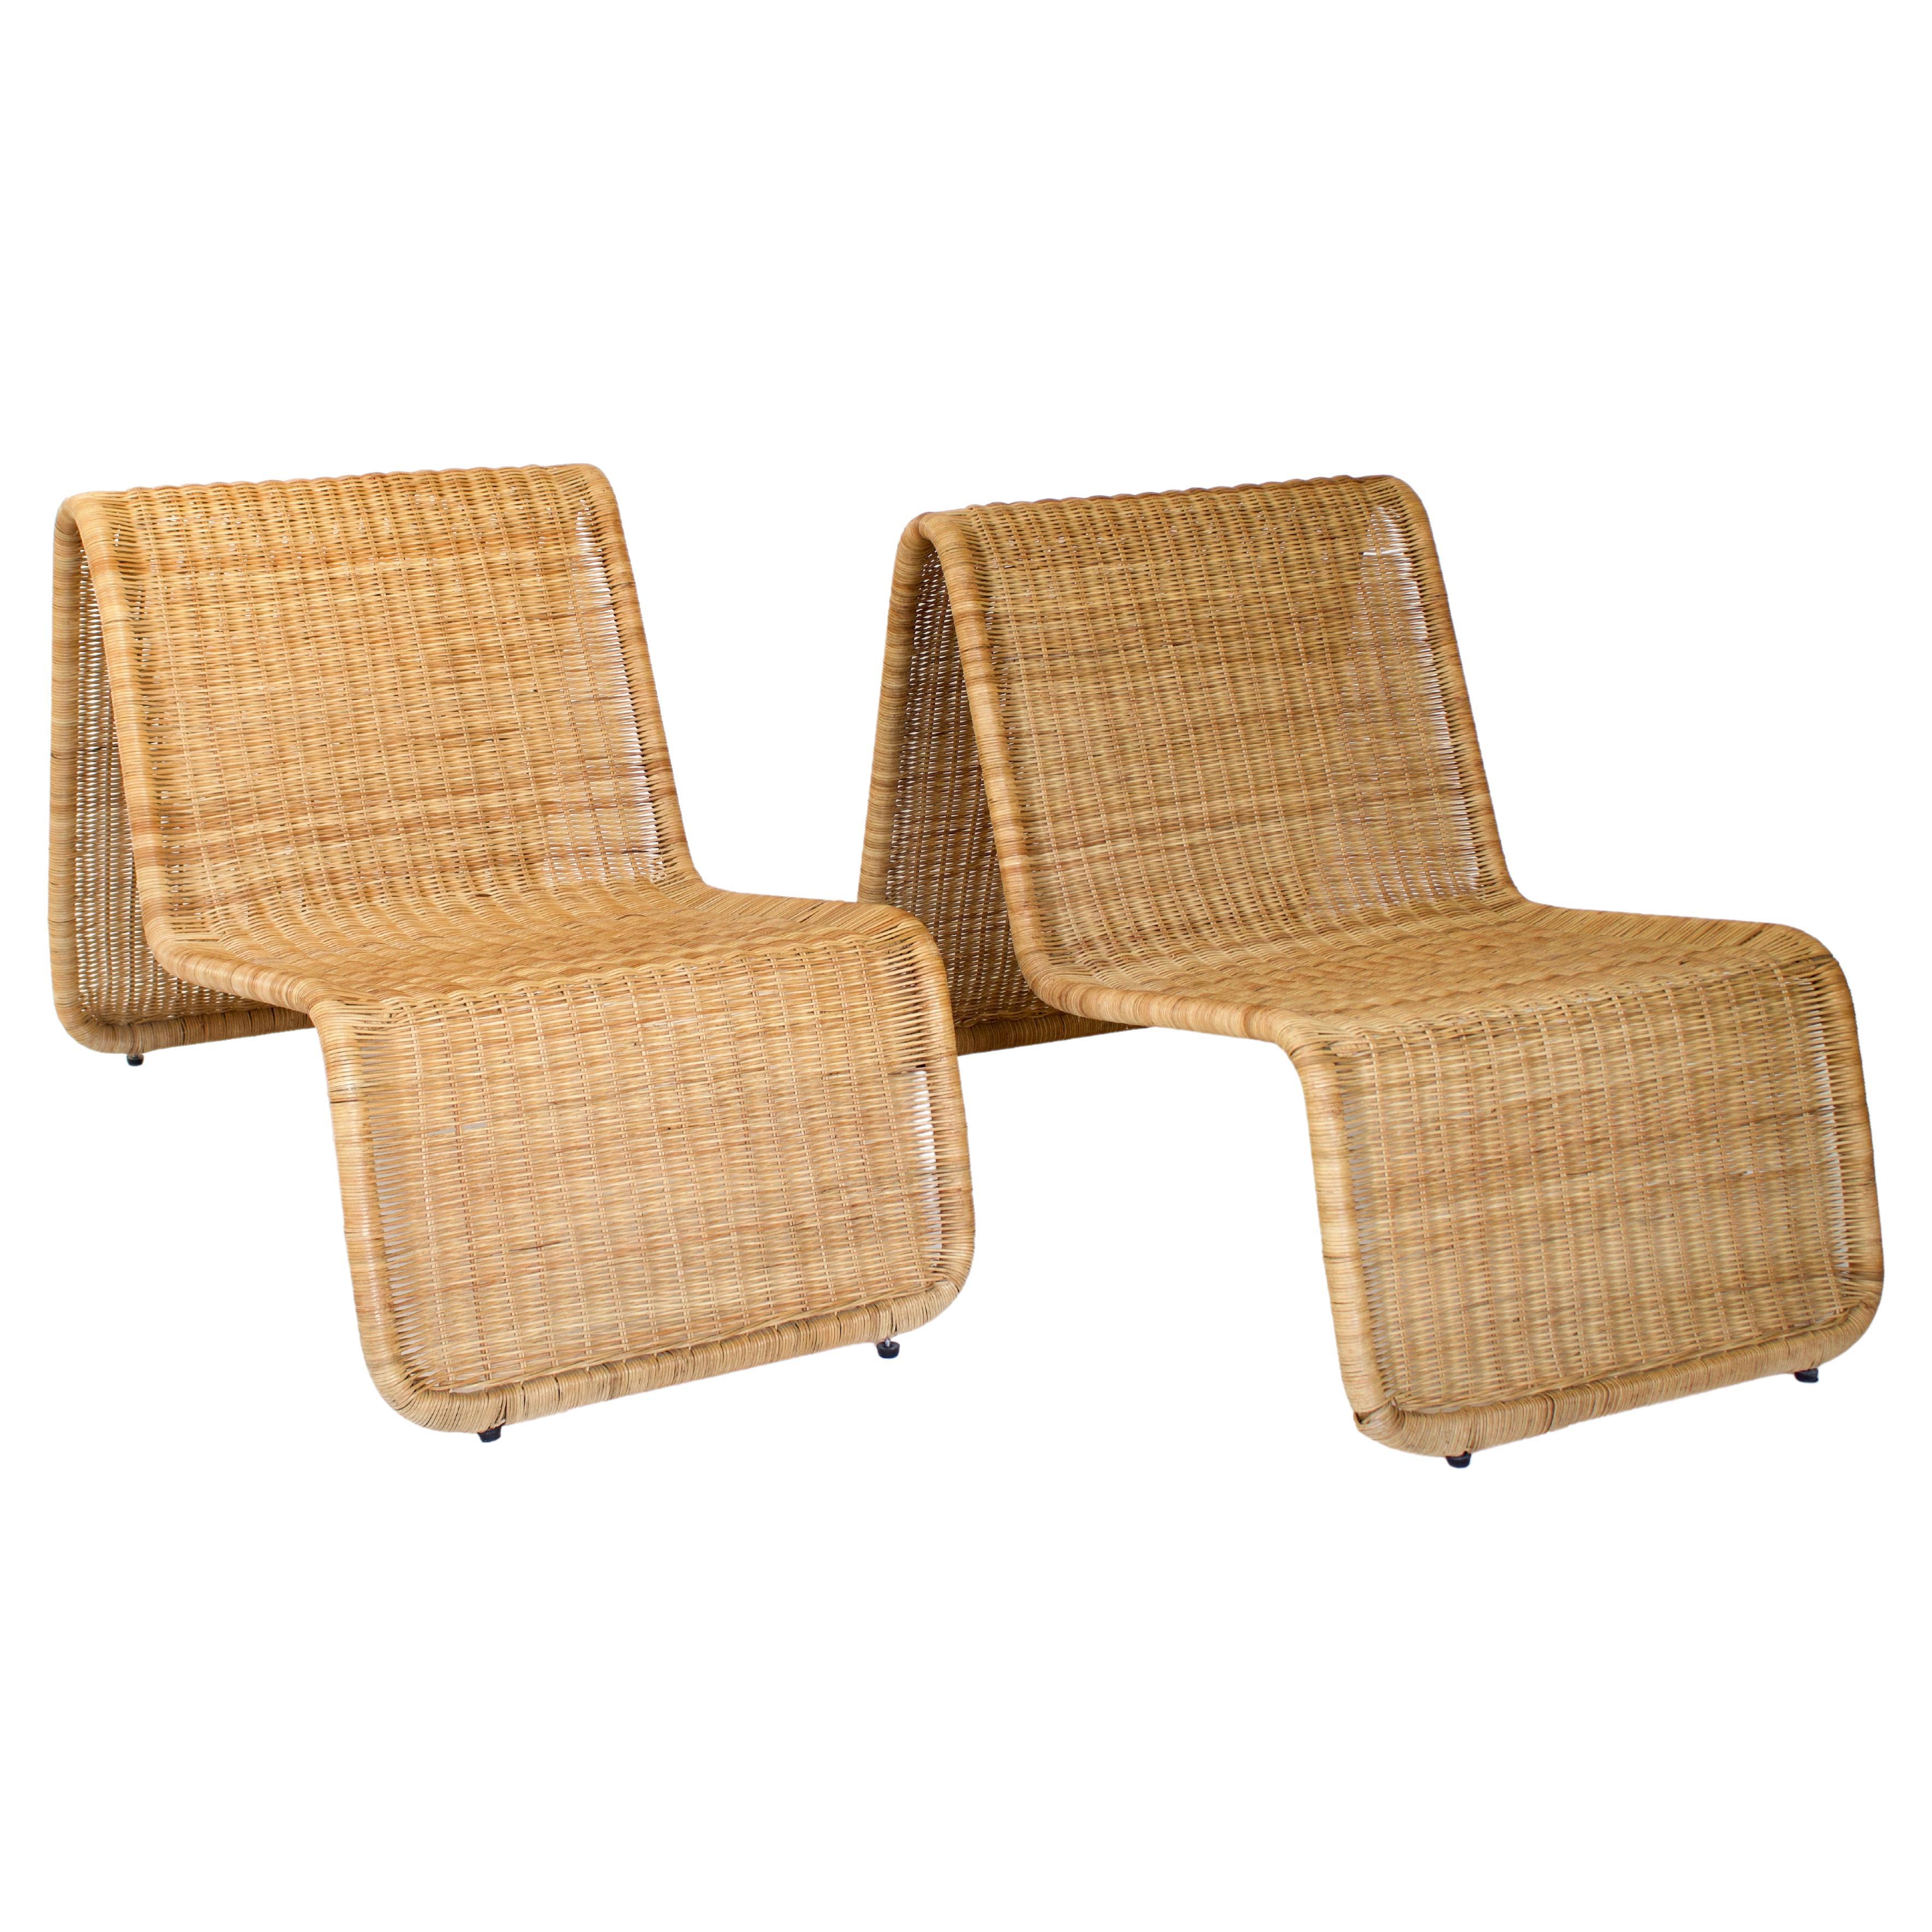 Tito Agnoli Wicker or Rattan Sculptural Italian Lounge Chairs "P3" for Bonacina